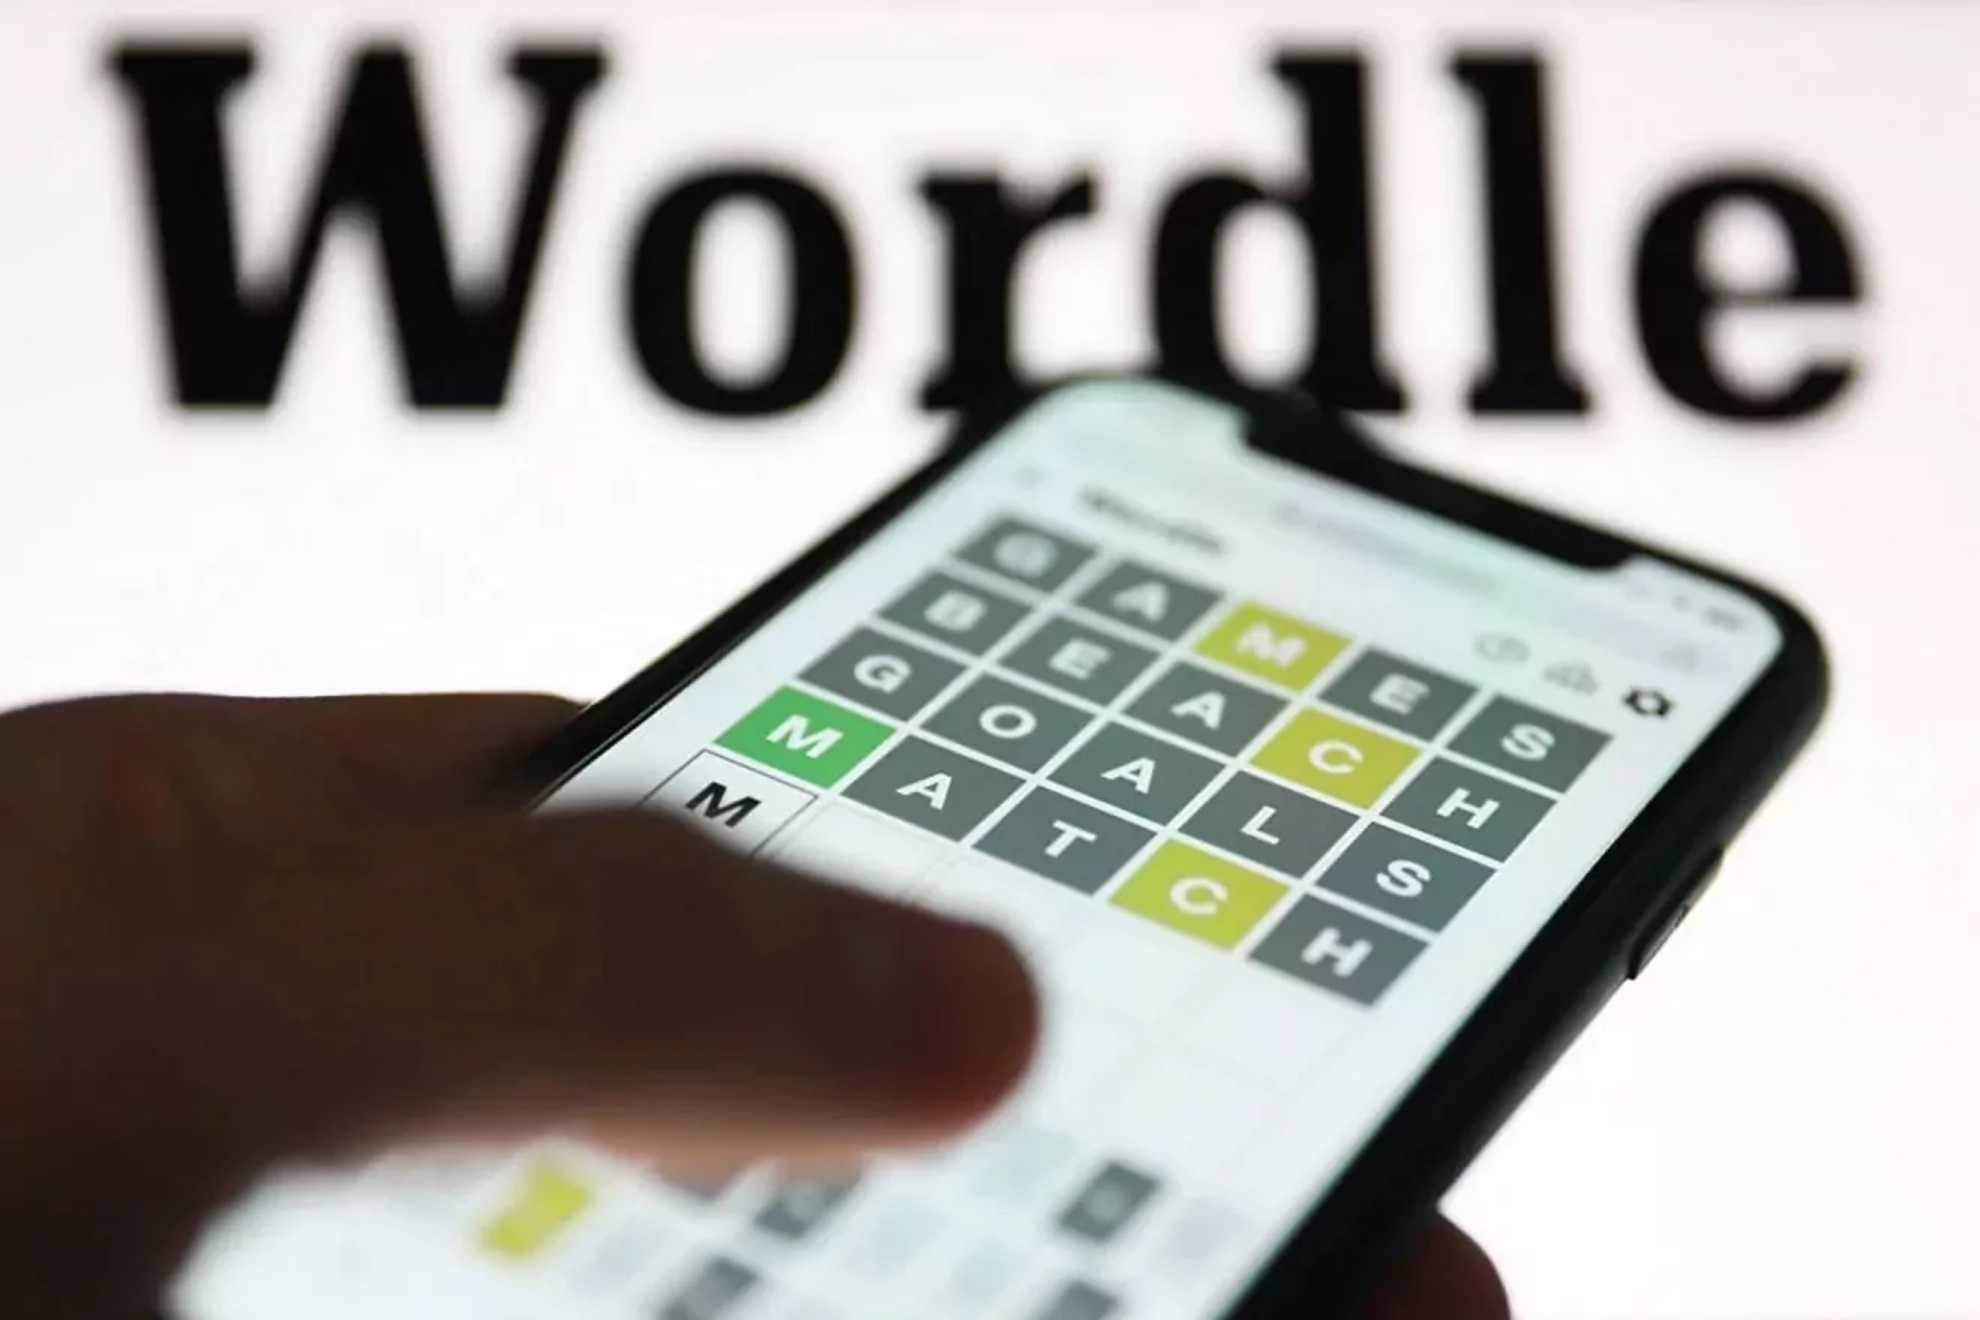 Wordle espaol hoy, 26 de abril: normal, tildes y cientfico | Soluciones y pistas para adivinar la palabra